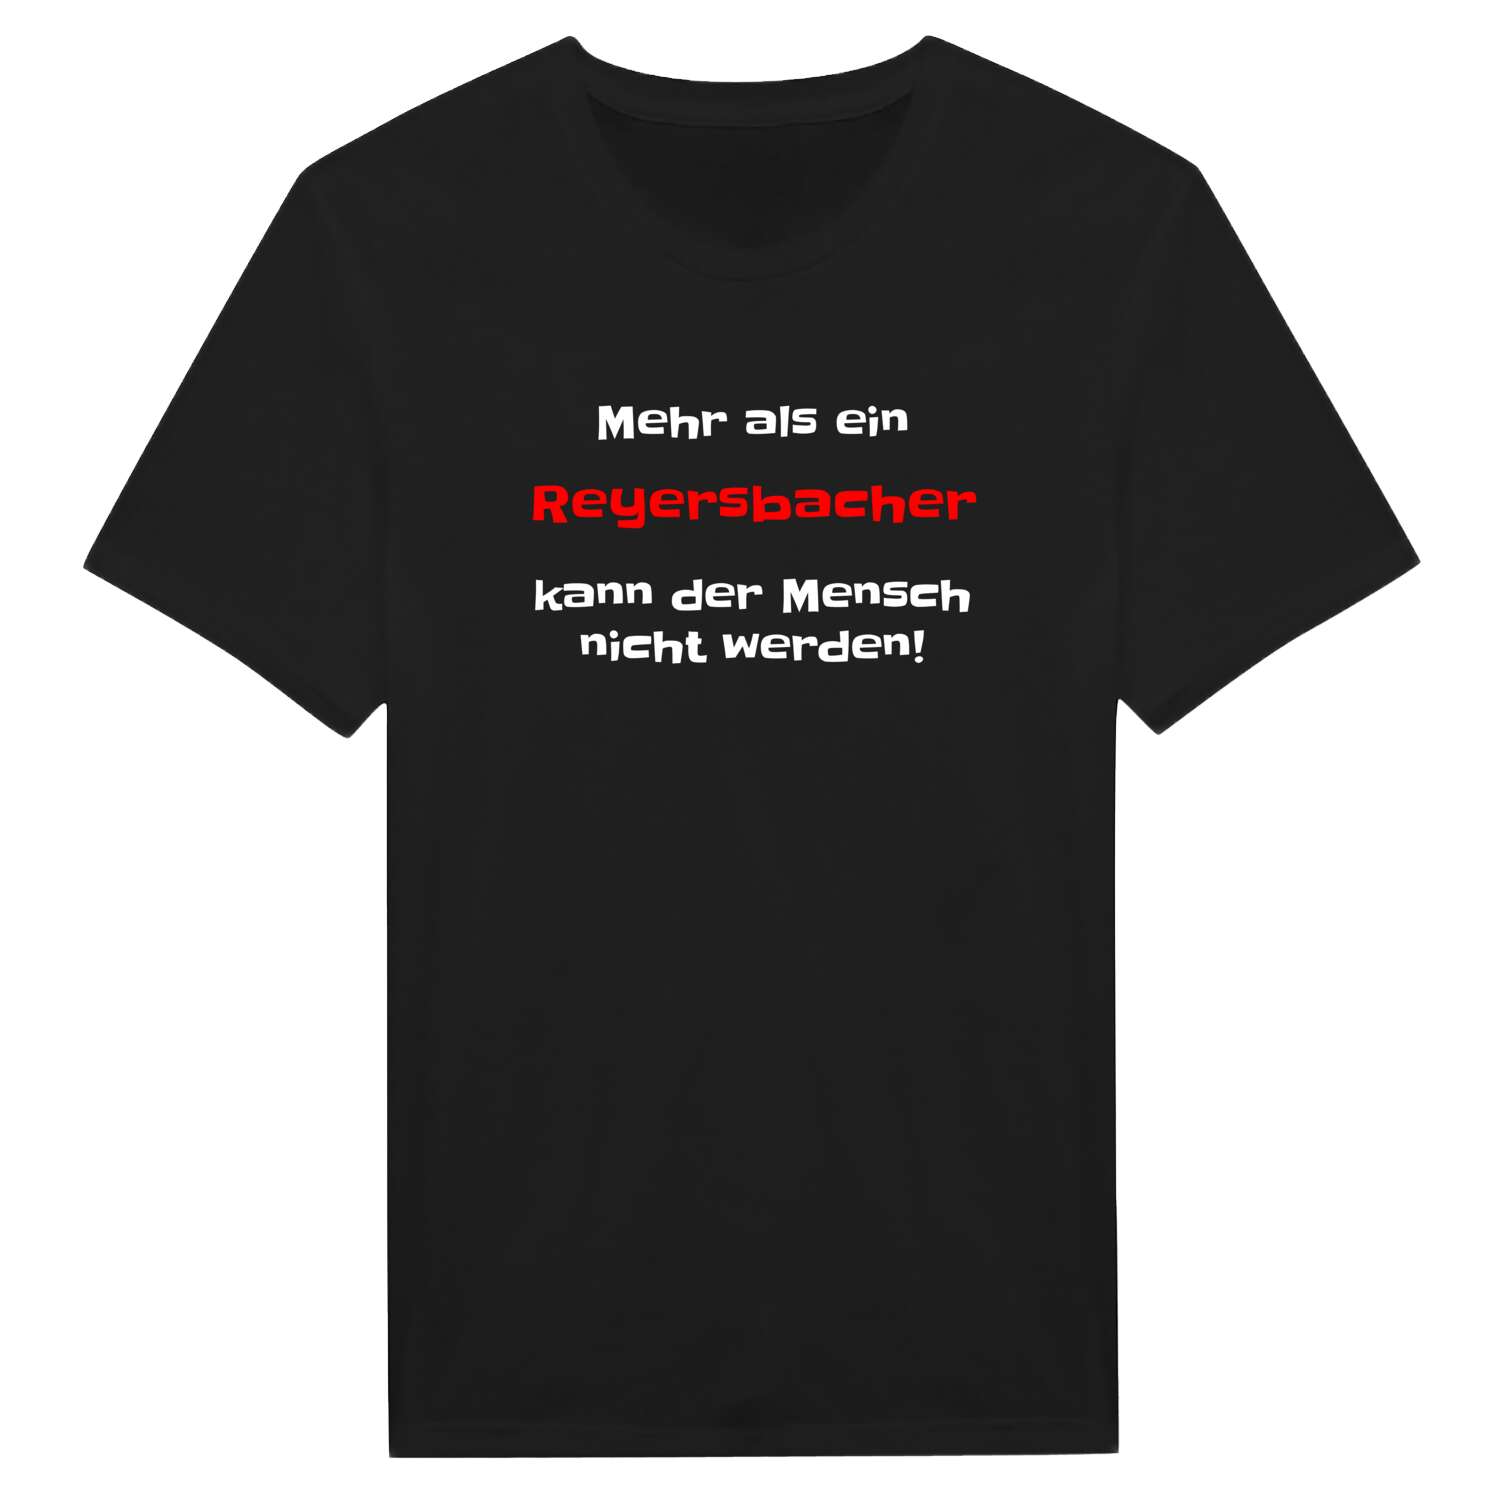 Reyersbach T-Shirt »Mehr als ein«